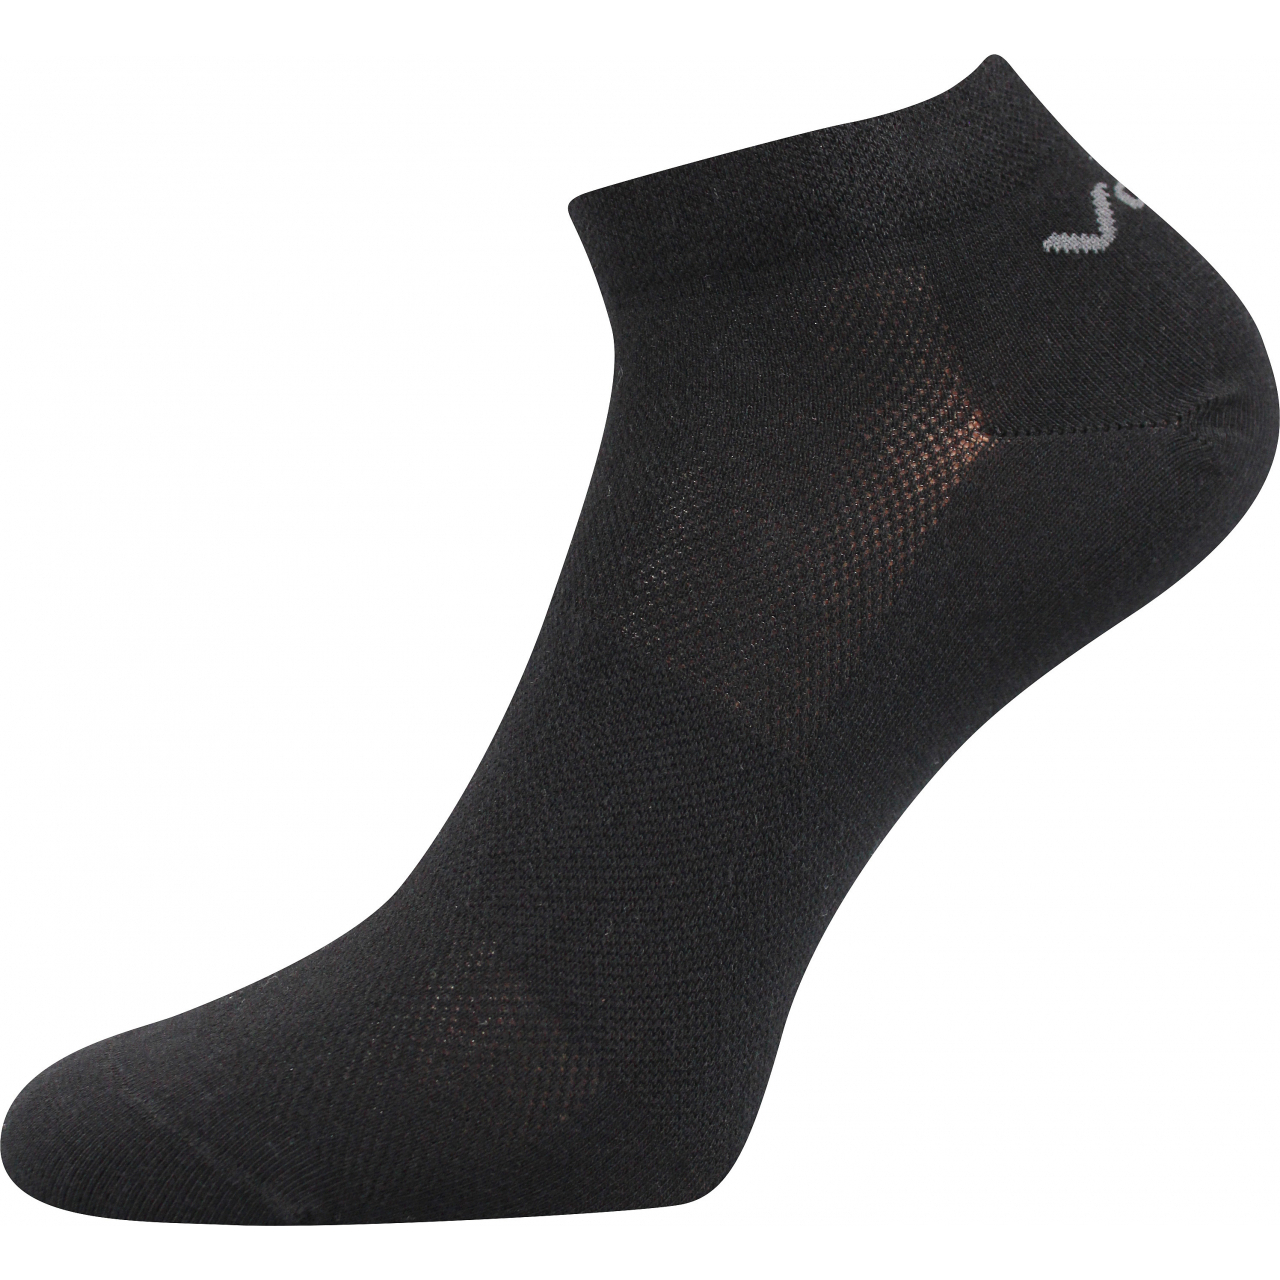 Ponožky unisex klasické Voxx Metys - černé, 35-38